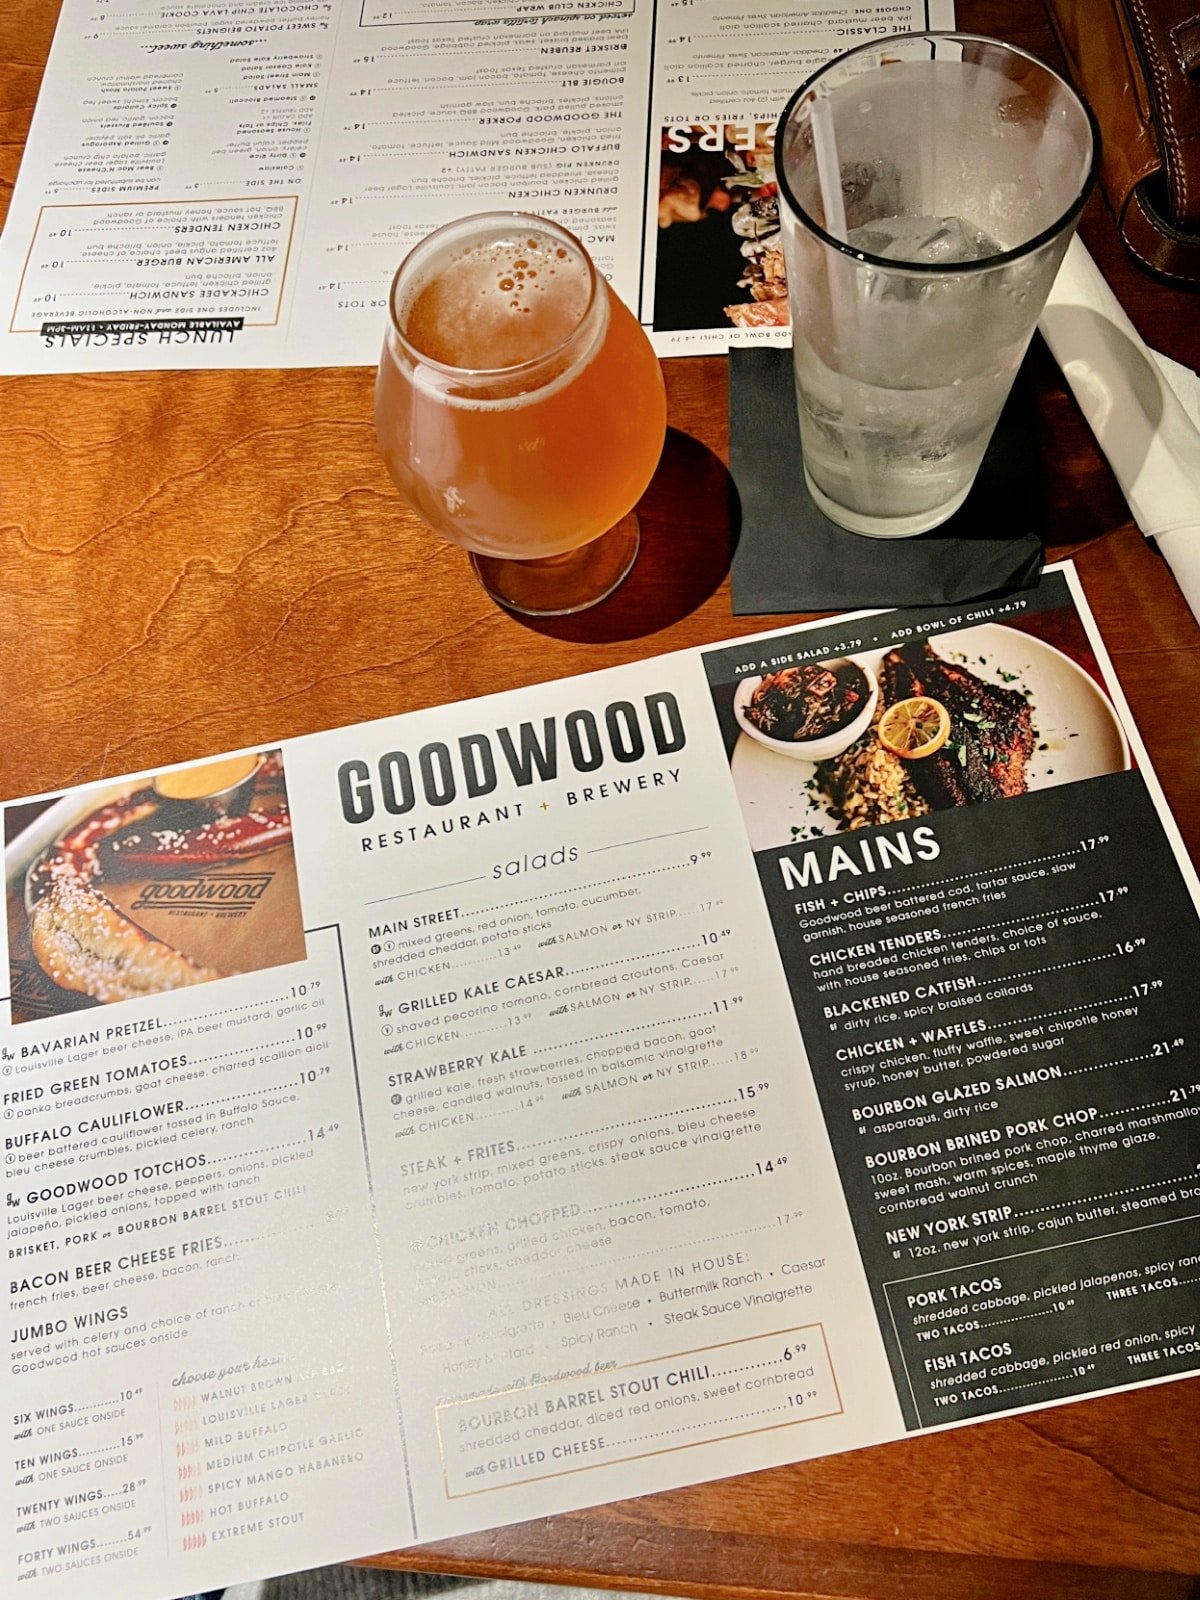 goodwood menu and draft beer